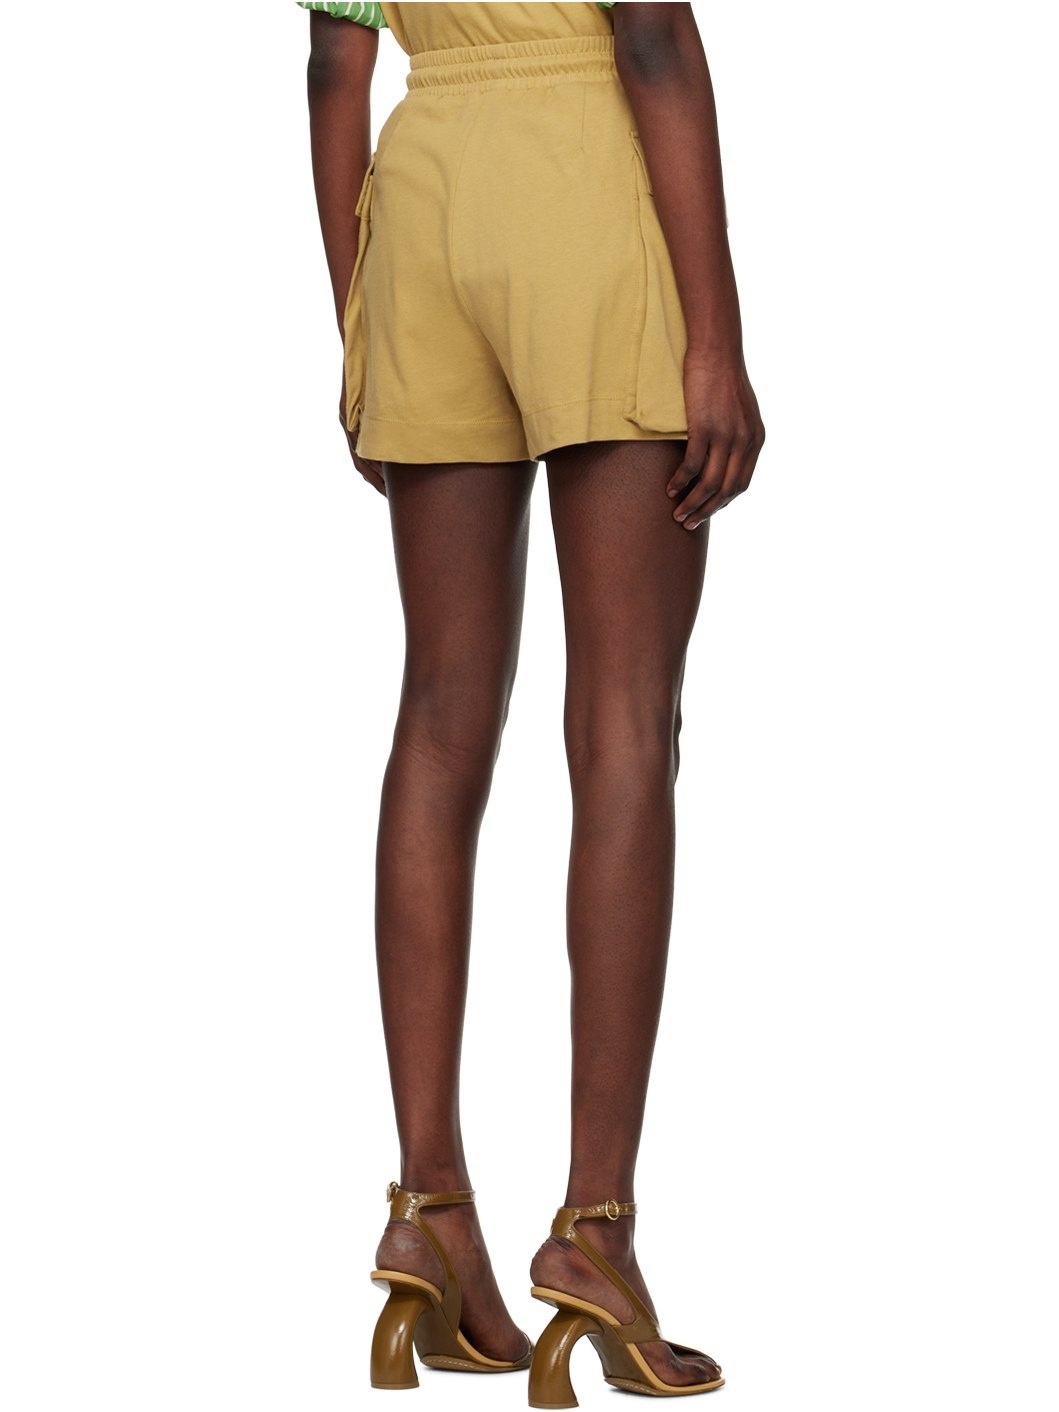 Tan Drawstring Shorts - 3